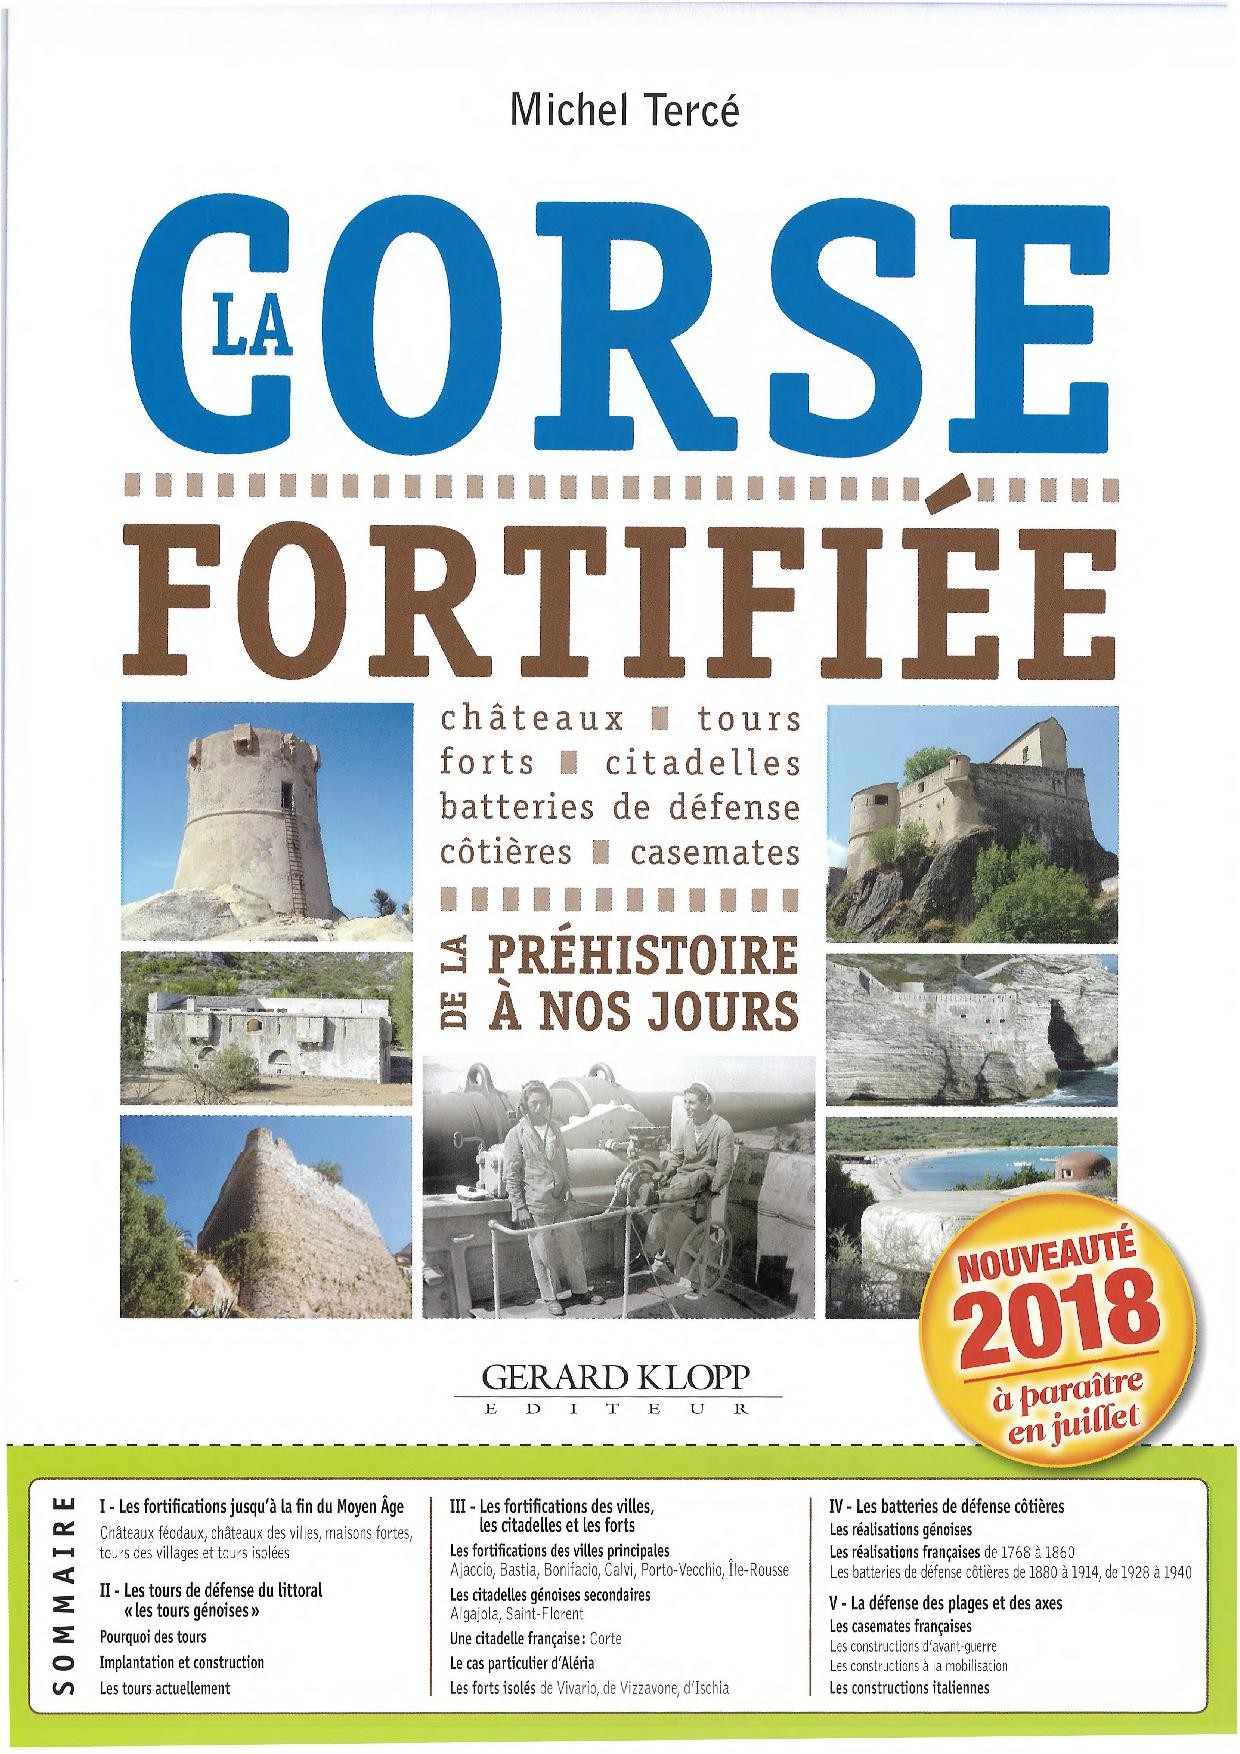 Livre - La Corse Fortifiée - De la Préhistoire à nos jours (TERCE Michel) - TERCE Michel